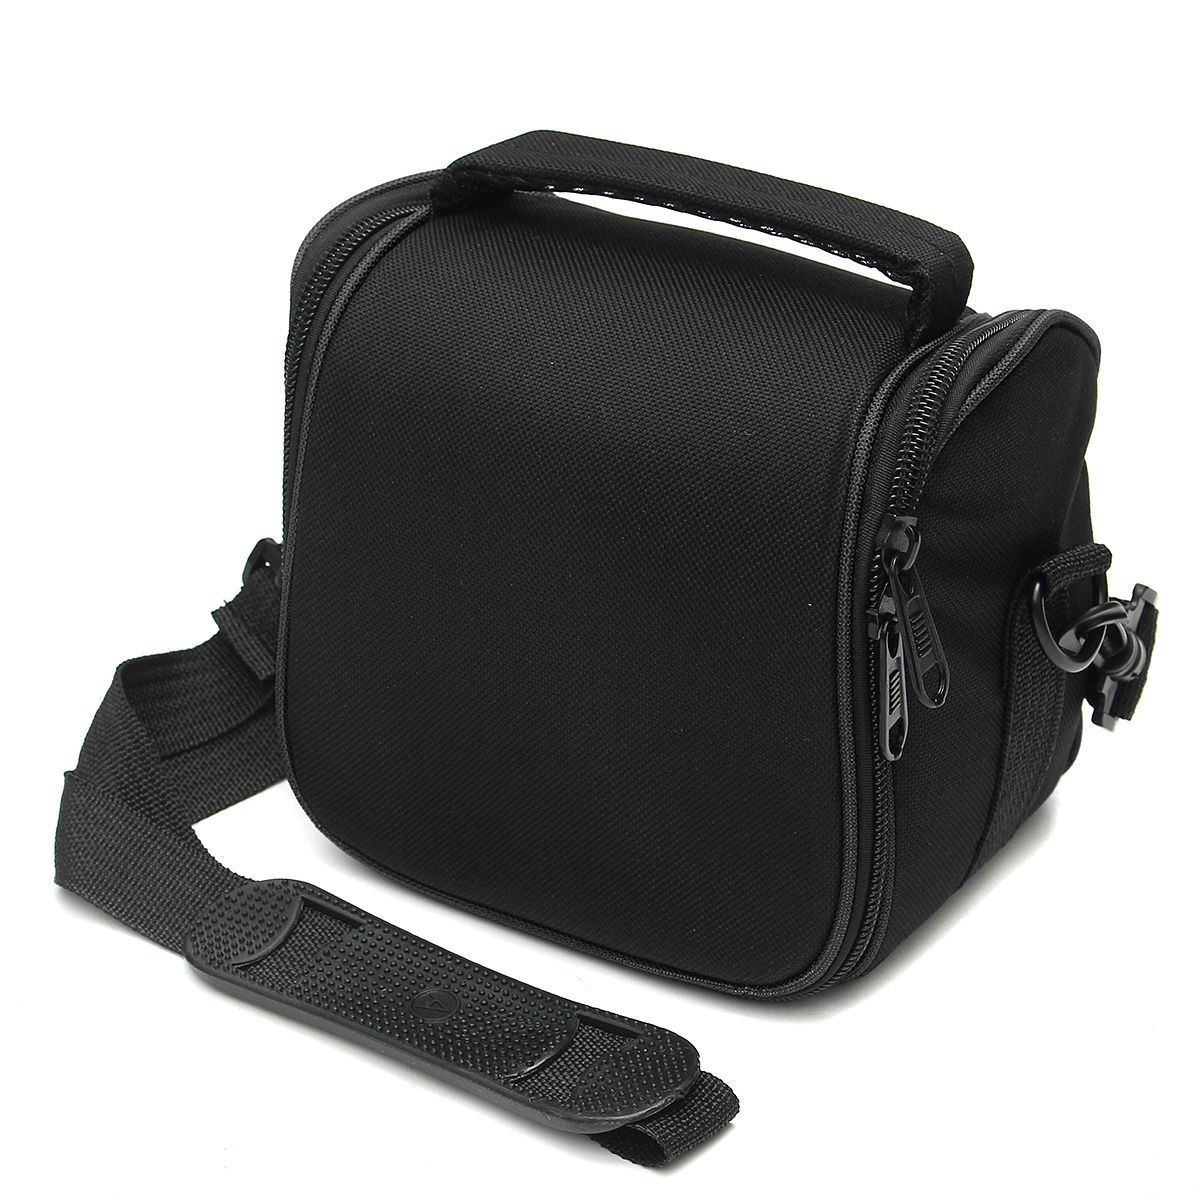 Water-resistant-Camera-Shoulder-Sling-Bag-Carry-Travel-Case-for-DLSR-SLR-Digital-Camera-Flash-Lens-1633798